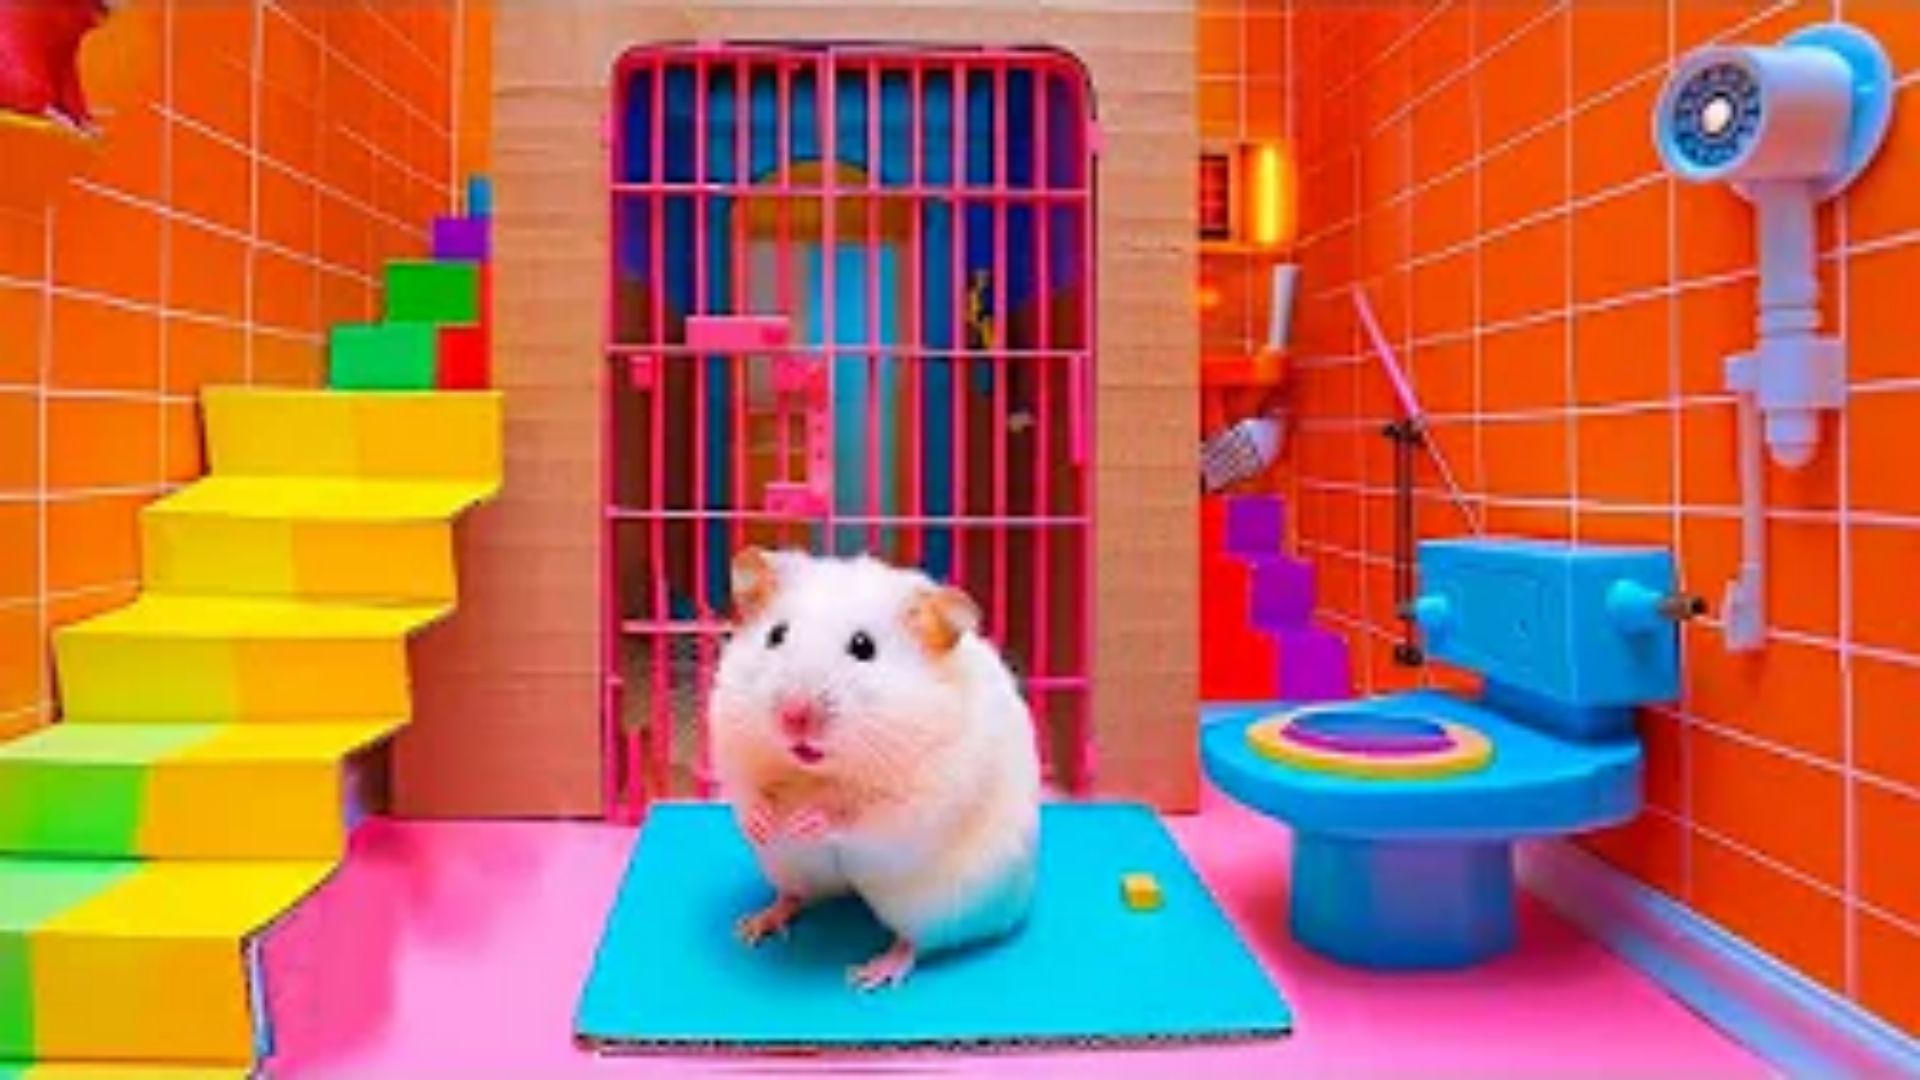 小仓鼠大冒险：DIY彩色密室大冒险，仓鼠能顺利找到出口吗？